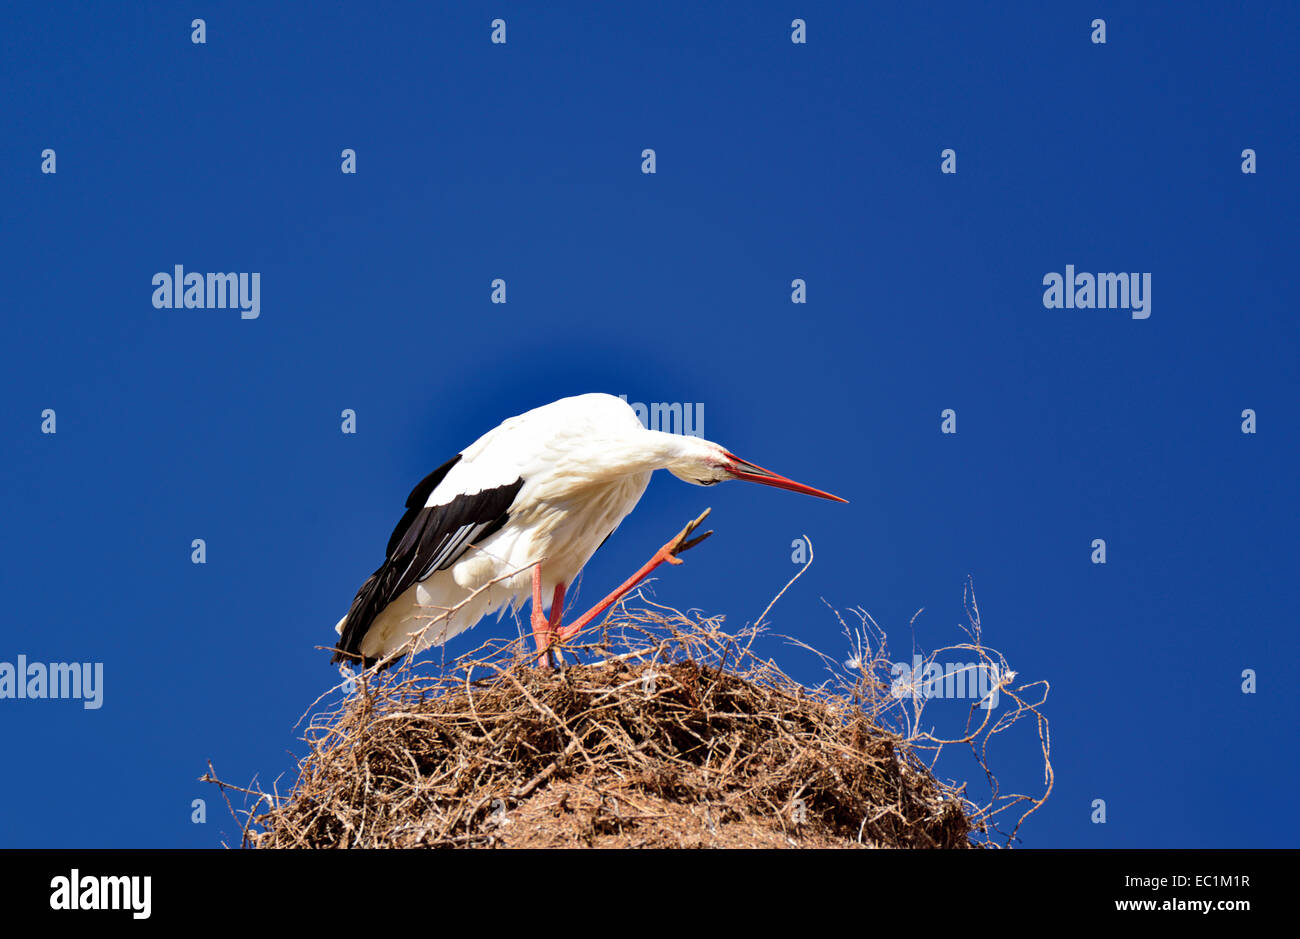 Portugal, Algarve: Cigüeña con nidos de cigüeña blanca (Ciconia ciconia) rascándose la cabeza Foto de stock